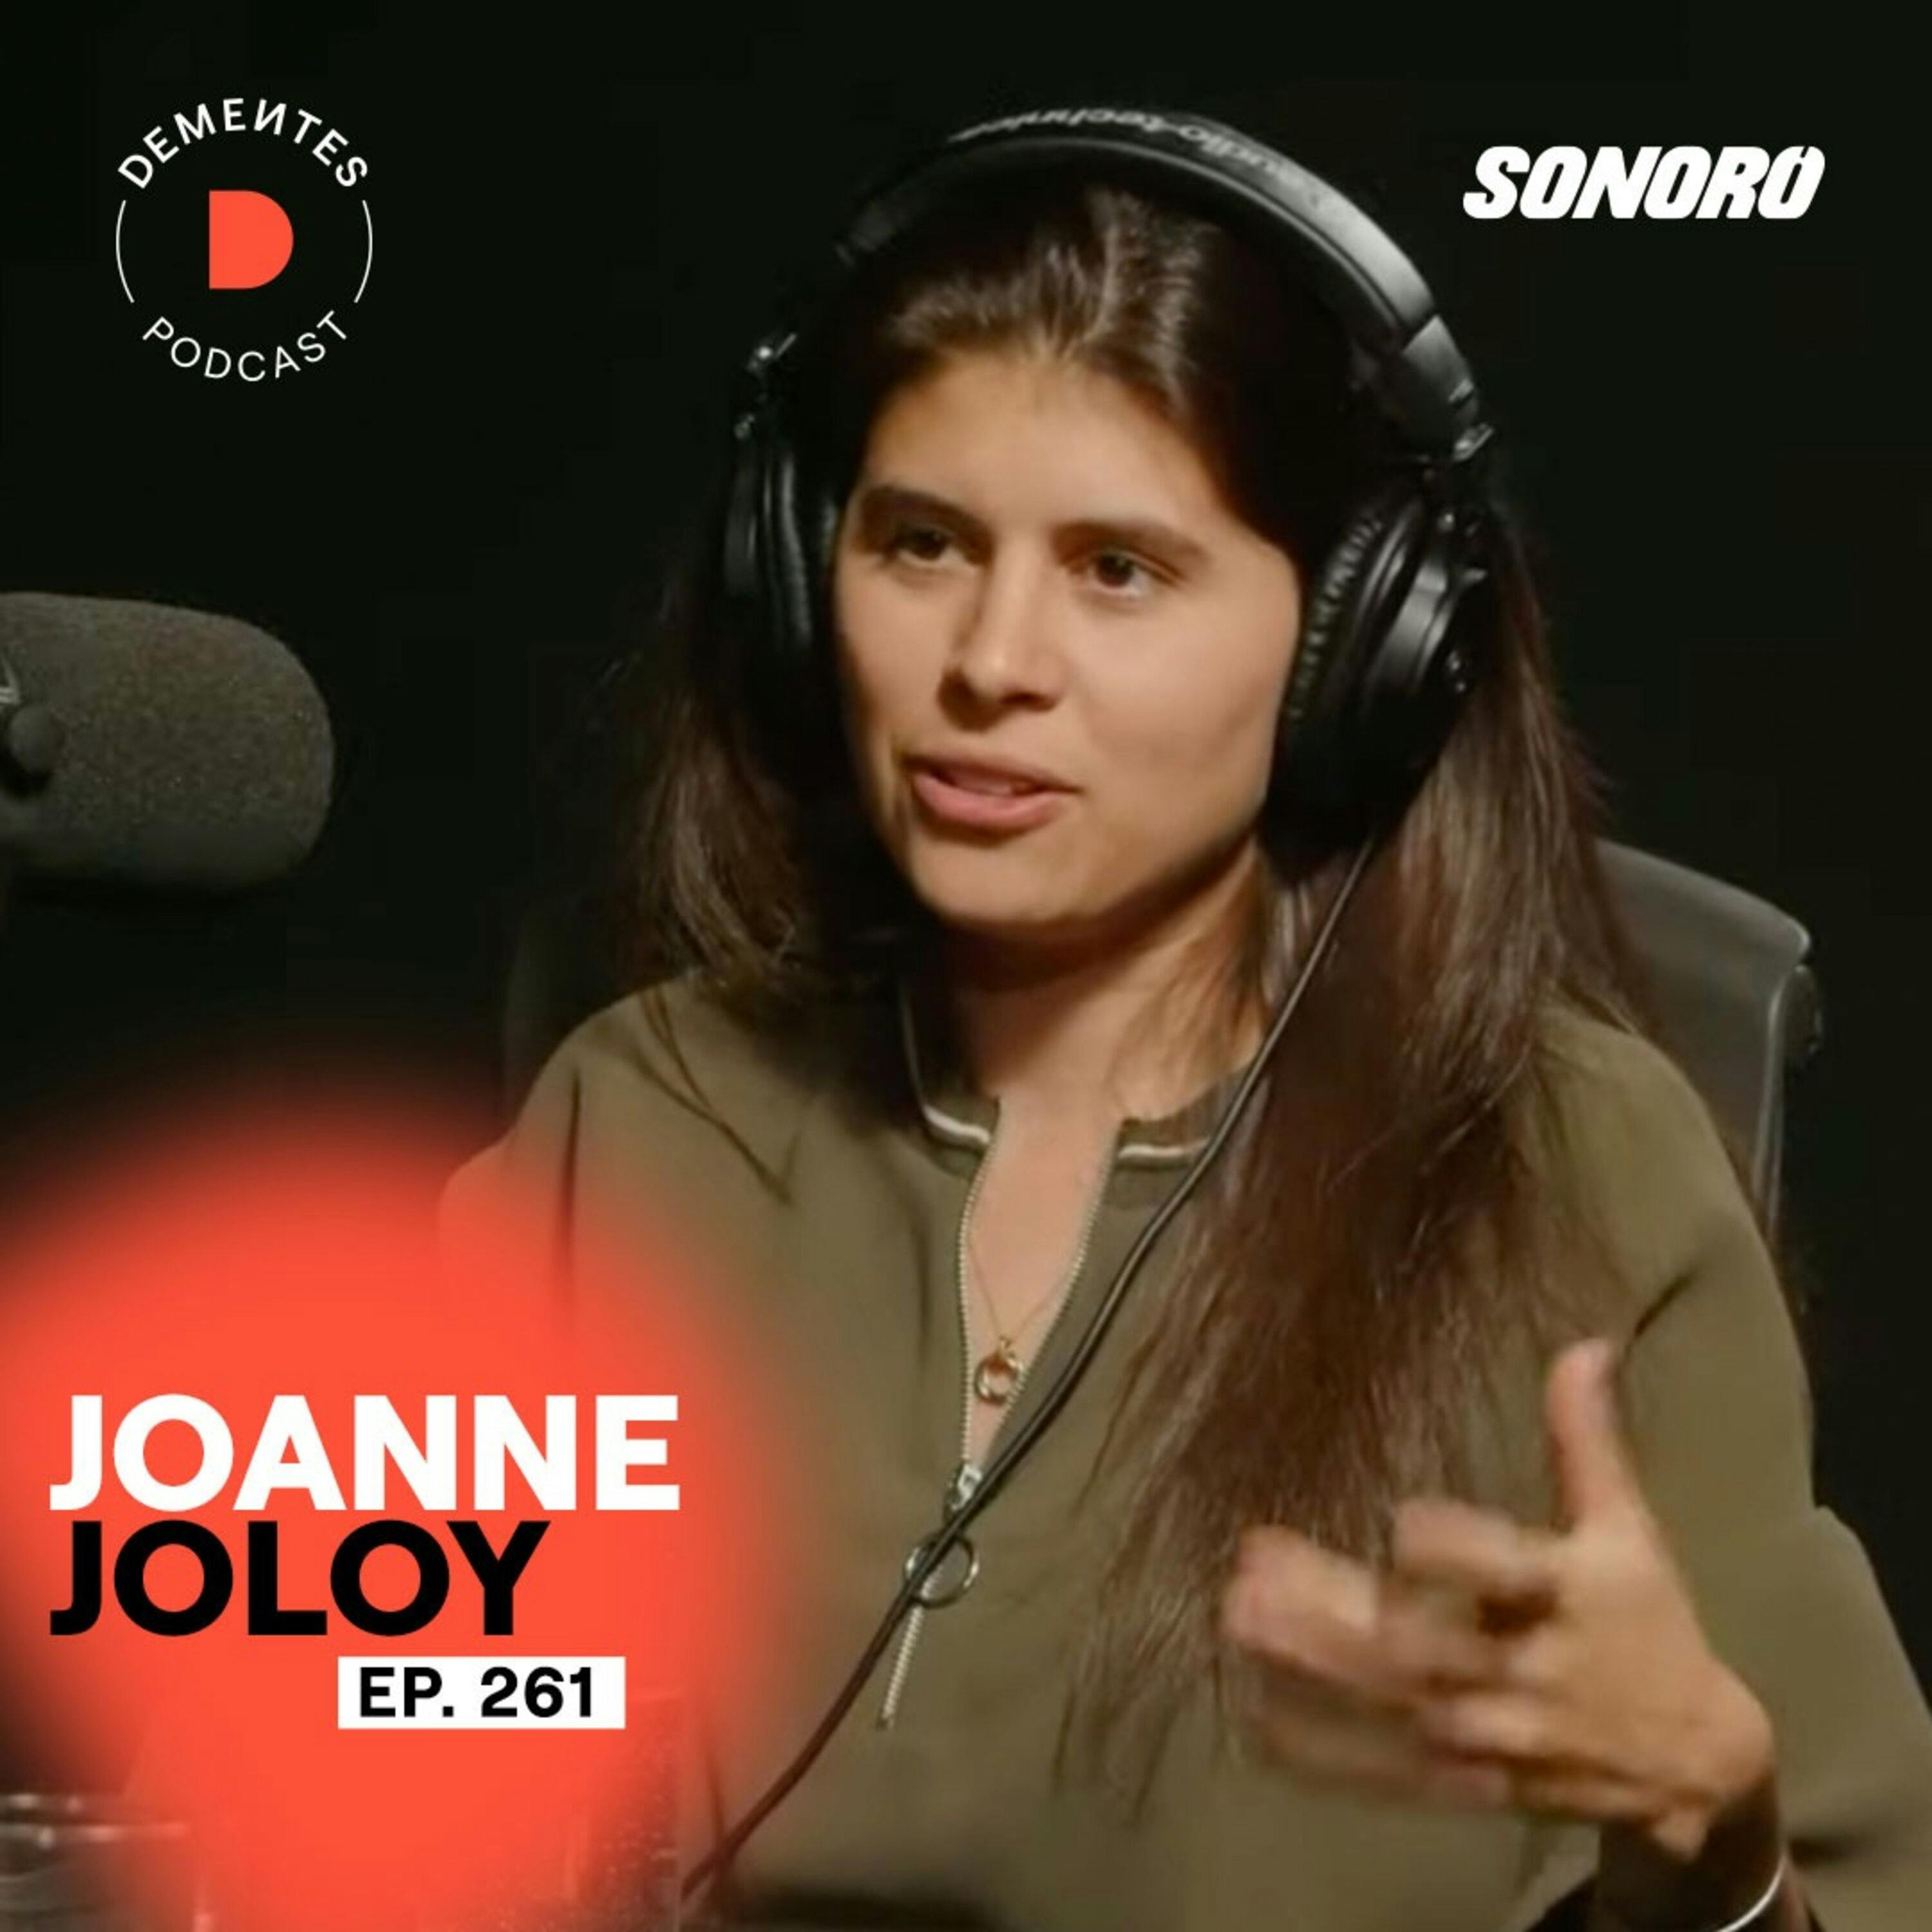 Joanne Joloy | El proceso de ayudar, dejar a un lado el ego y mejorar el mundo | 261